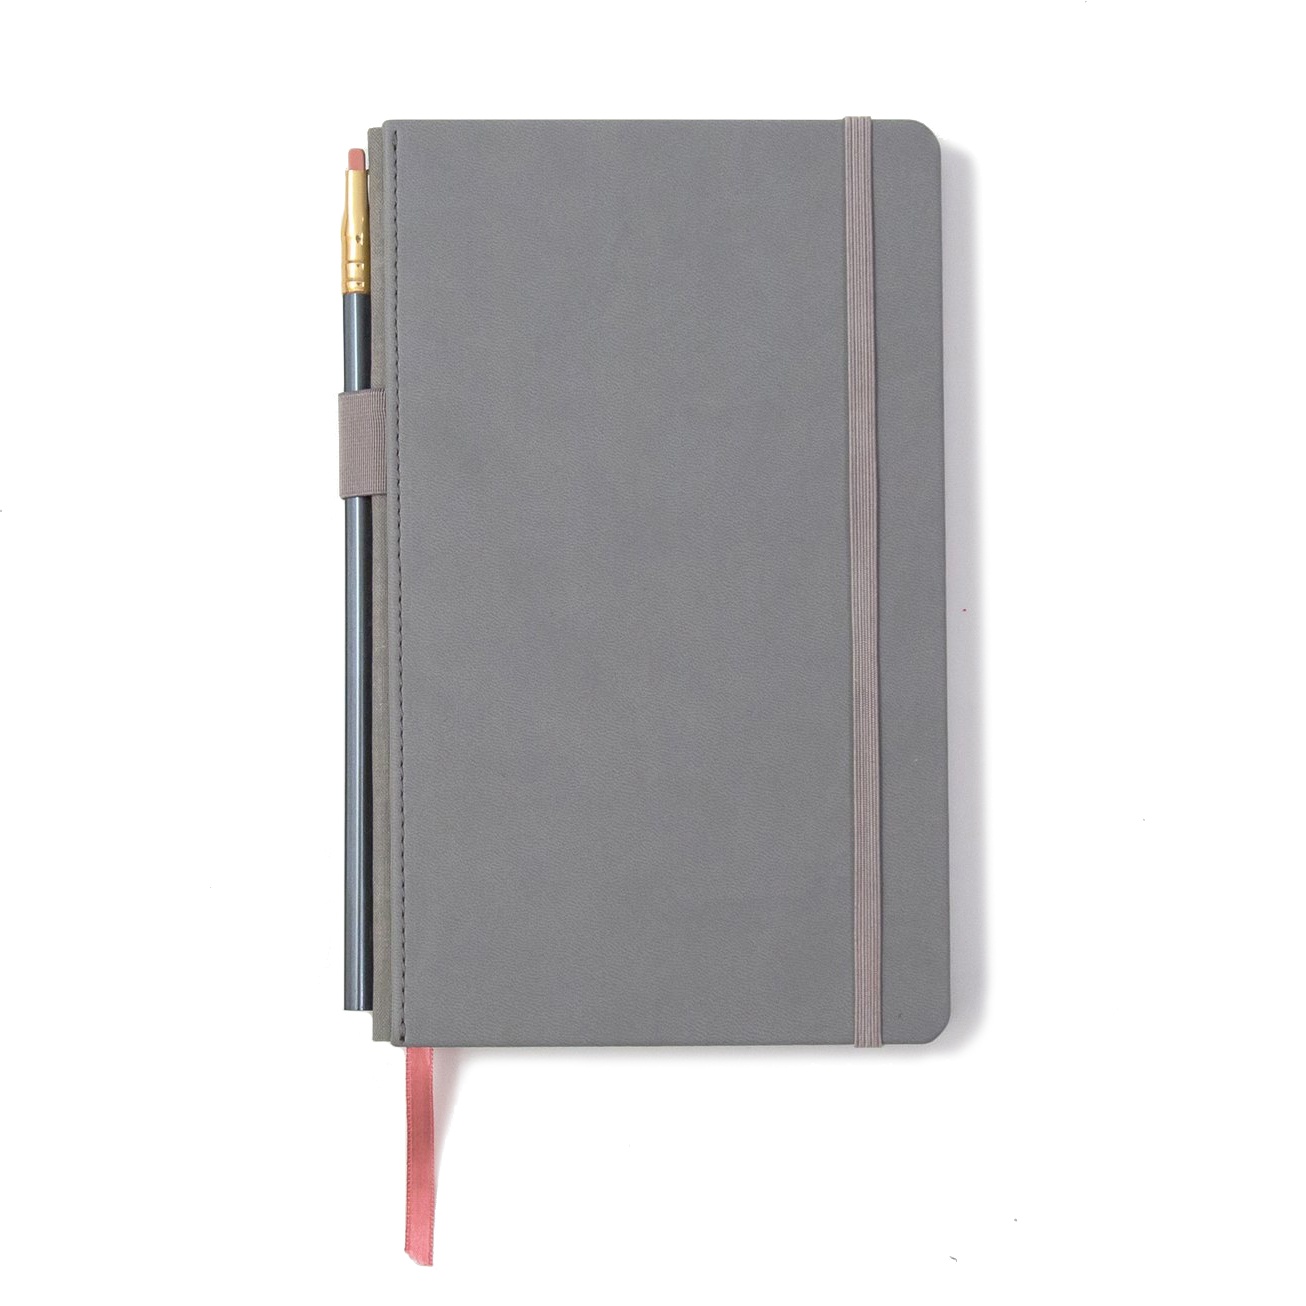 602 Slate Notebook + Pencil i gruppen  Papir & Blokk / Skrive og ta notater / Notisbøker hos Pen Store (100499_r)